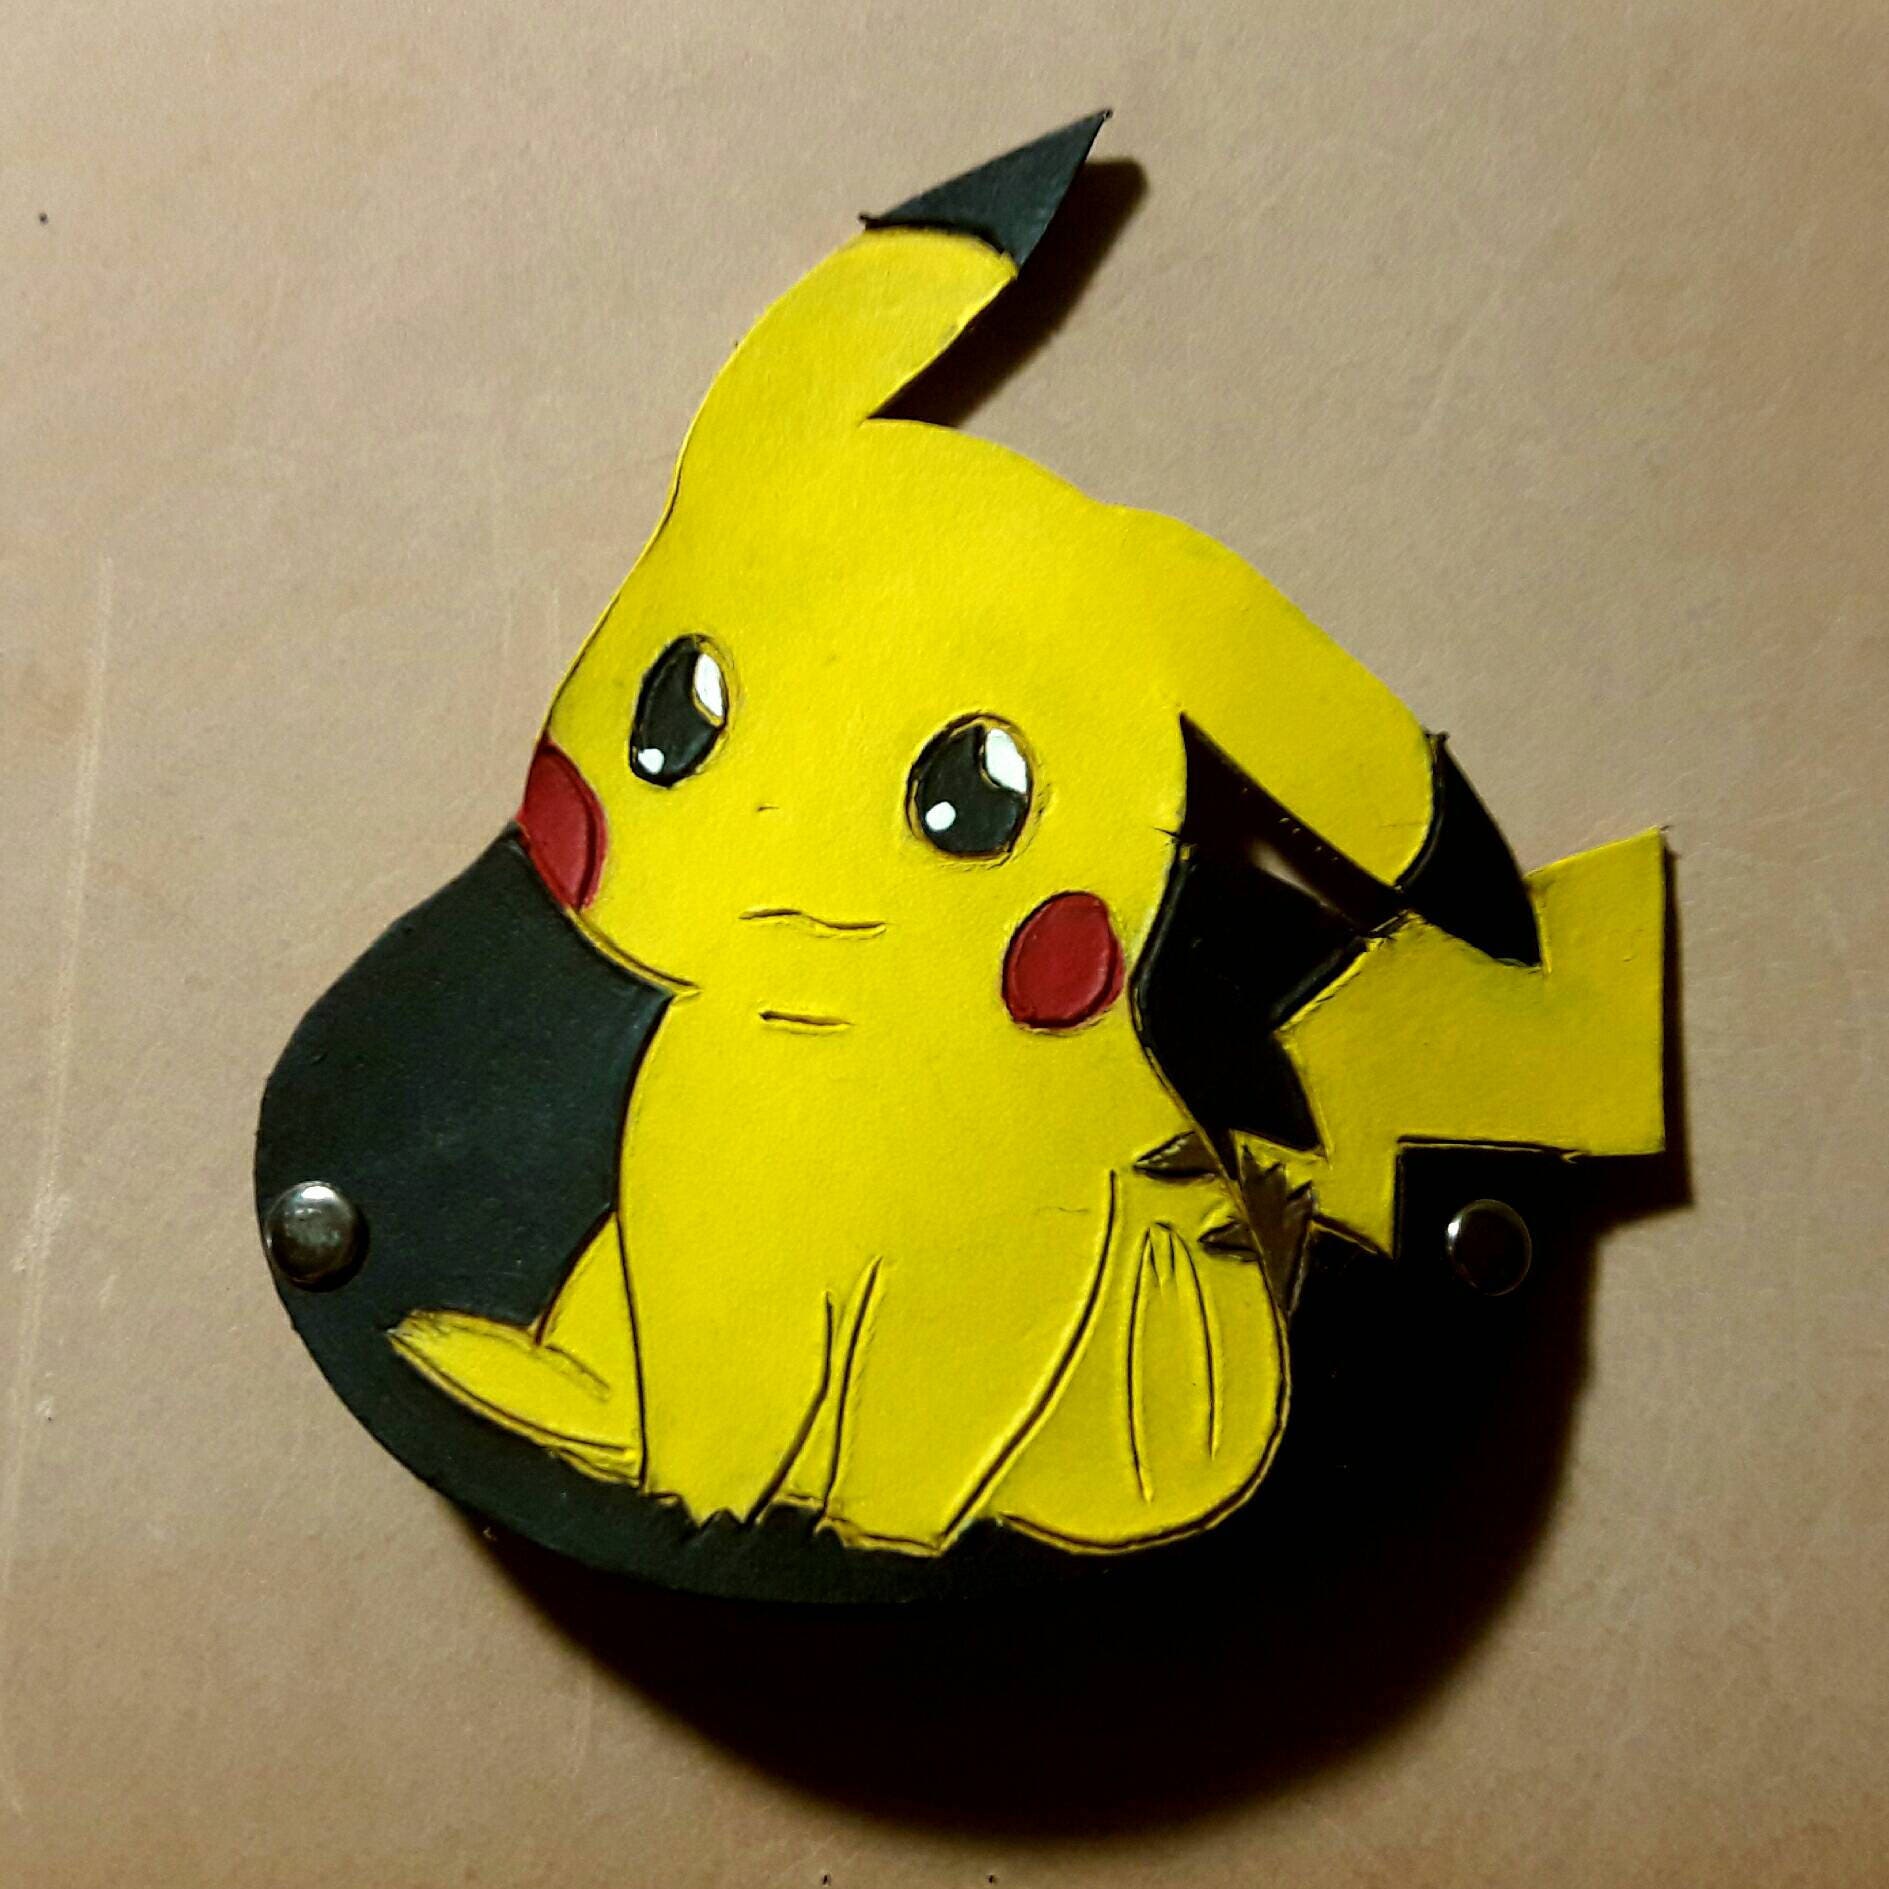 Bonnet - Pokemon - Pikachu With Ears